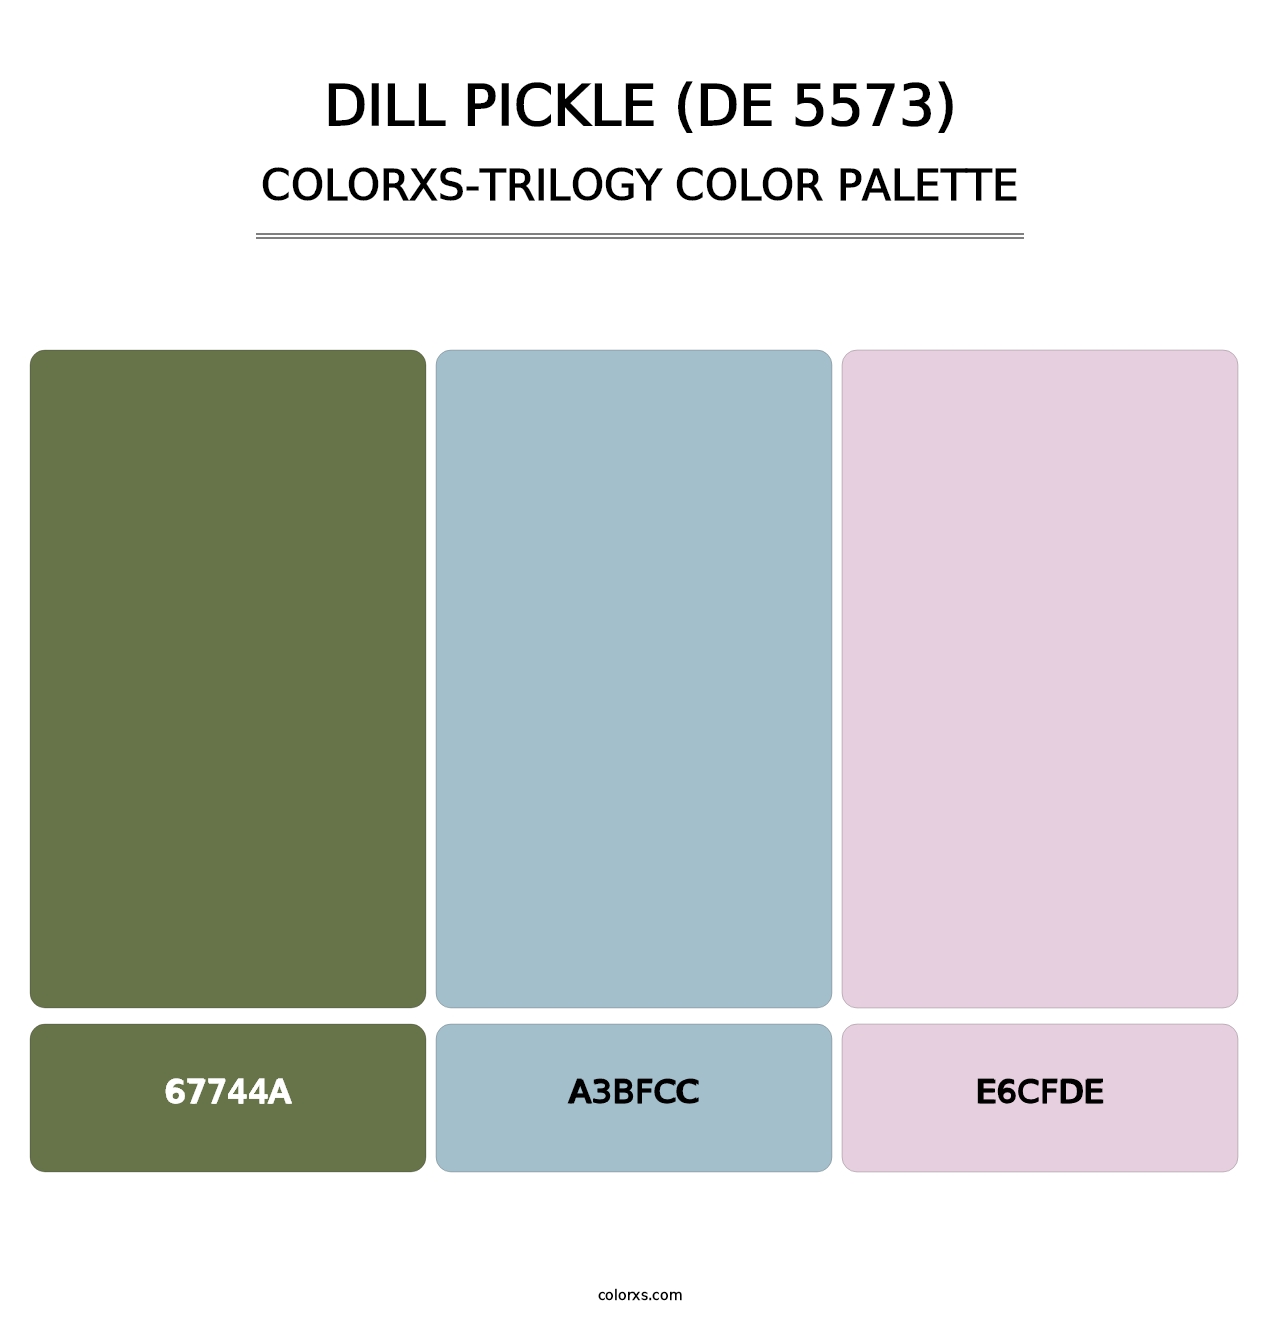 Dill Pickle (DE 5573) - Colorxs Trilogy Palette